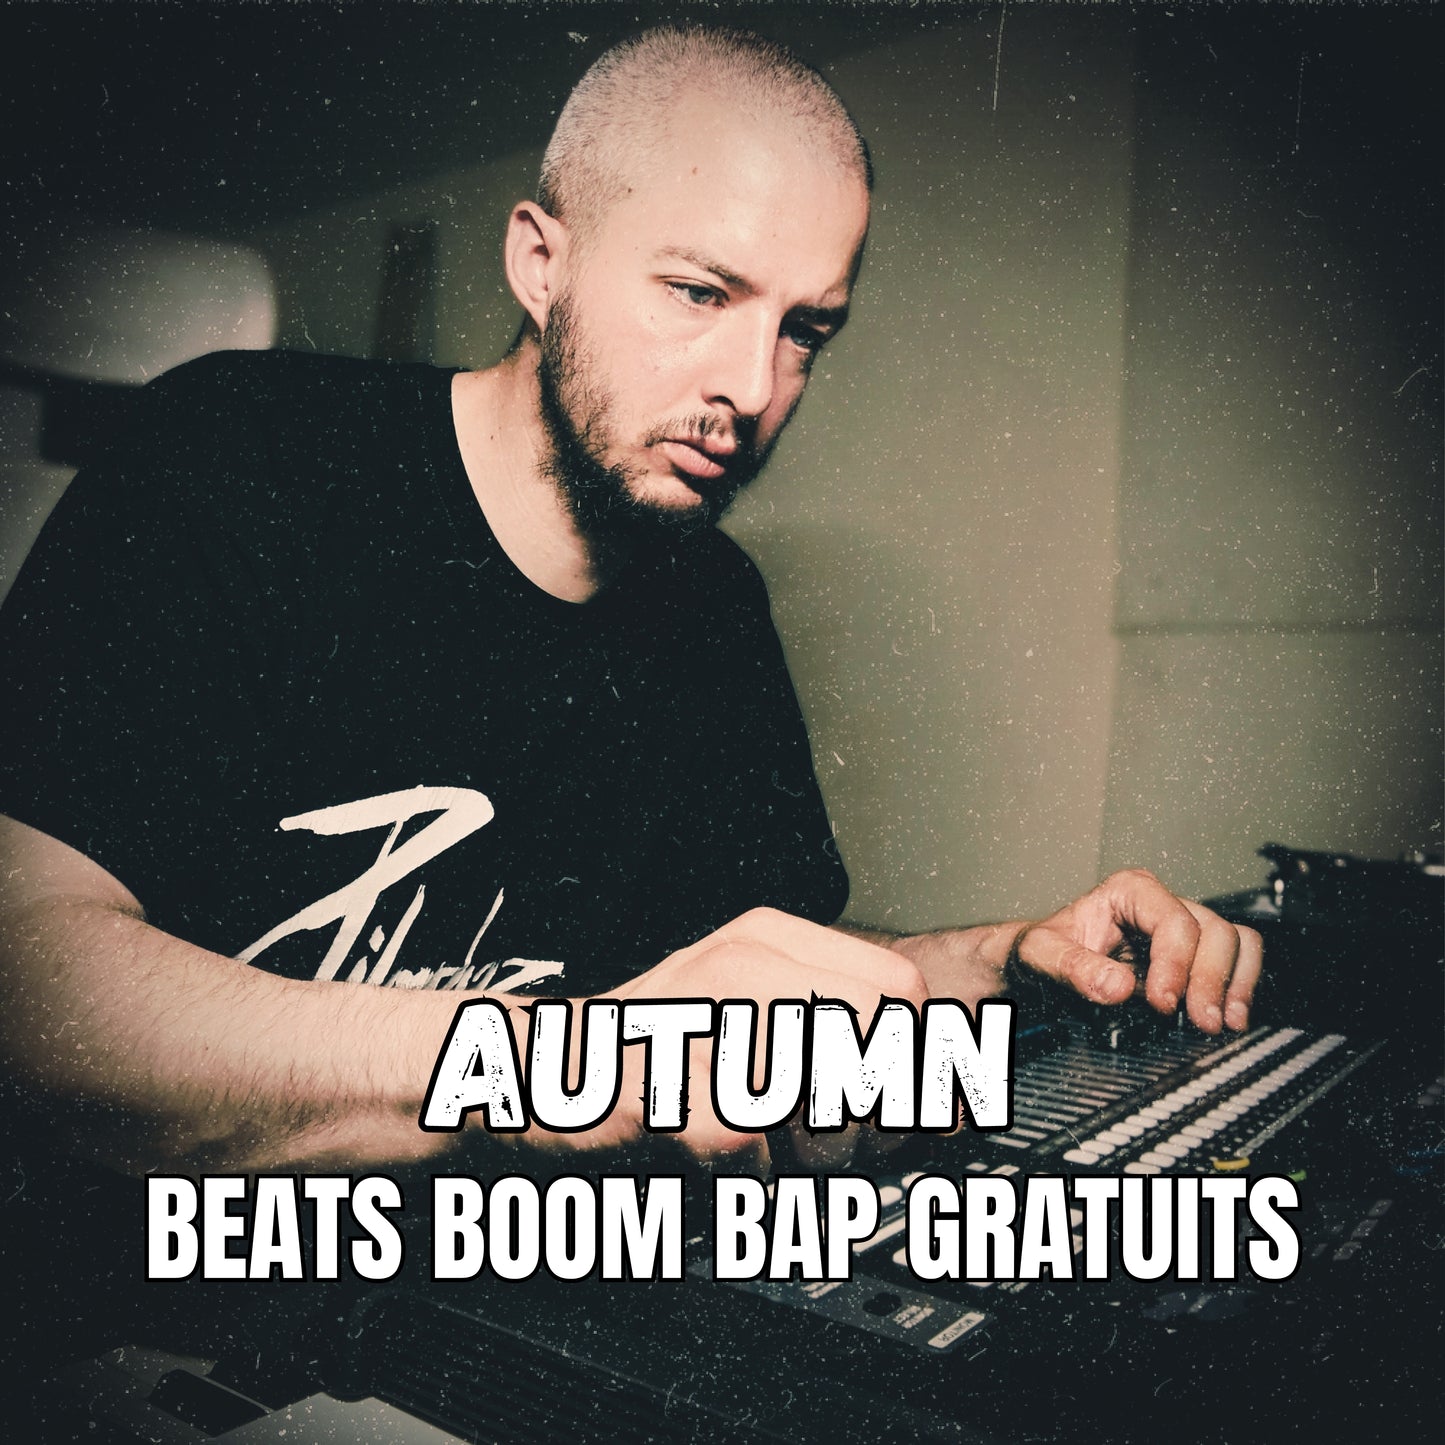 Découvrez le beat Boom Bap GRATUIT du beatmaker Hip Hop Nizuk, Autumn !